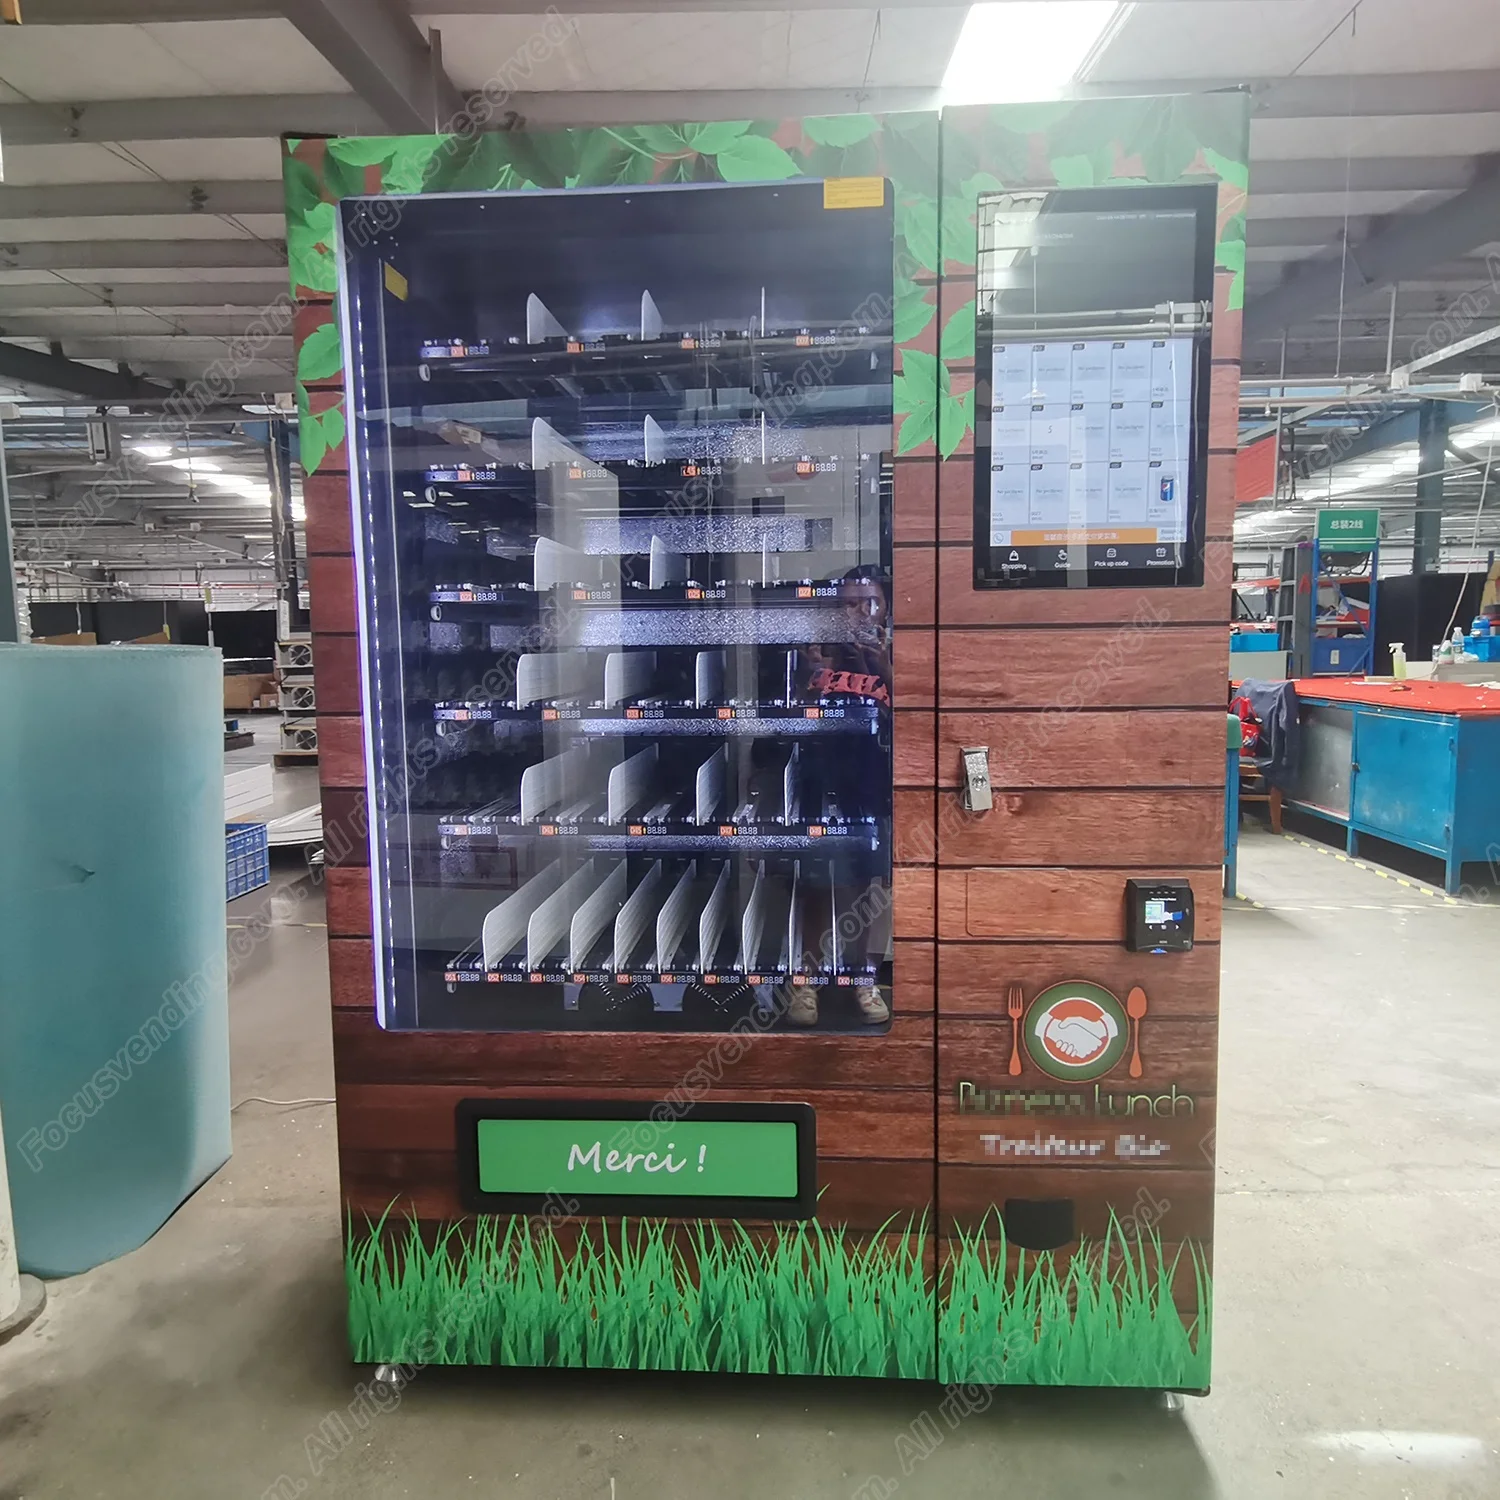 Коммерческий удобный торговый автомат для свежего хлеба и овощей с лифтом